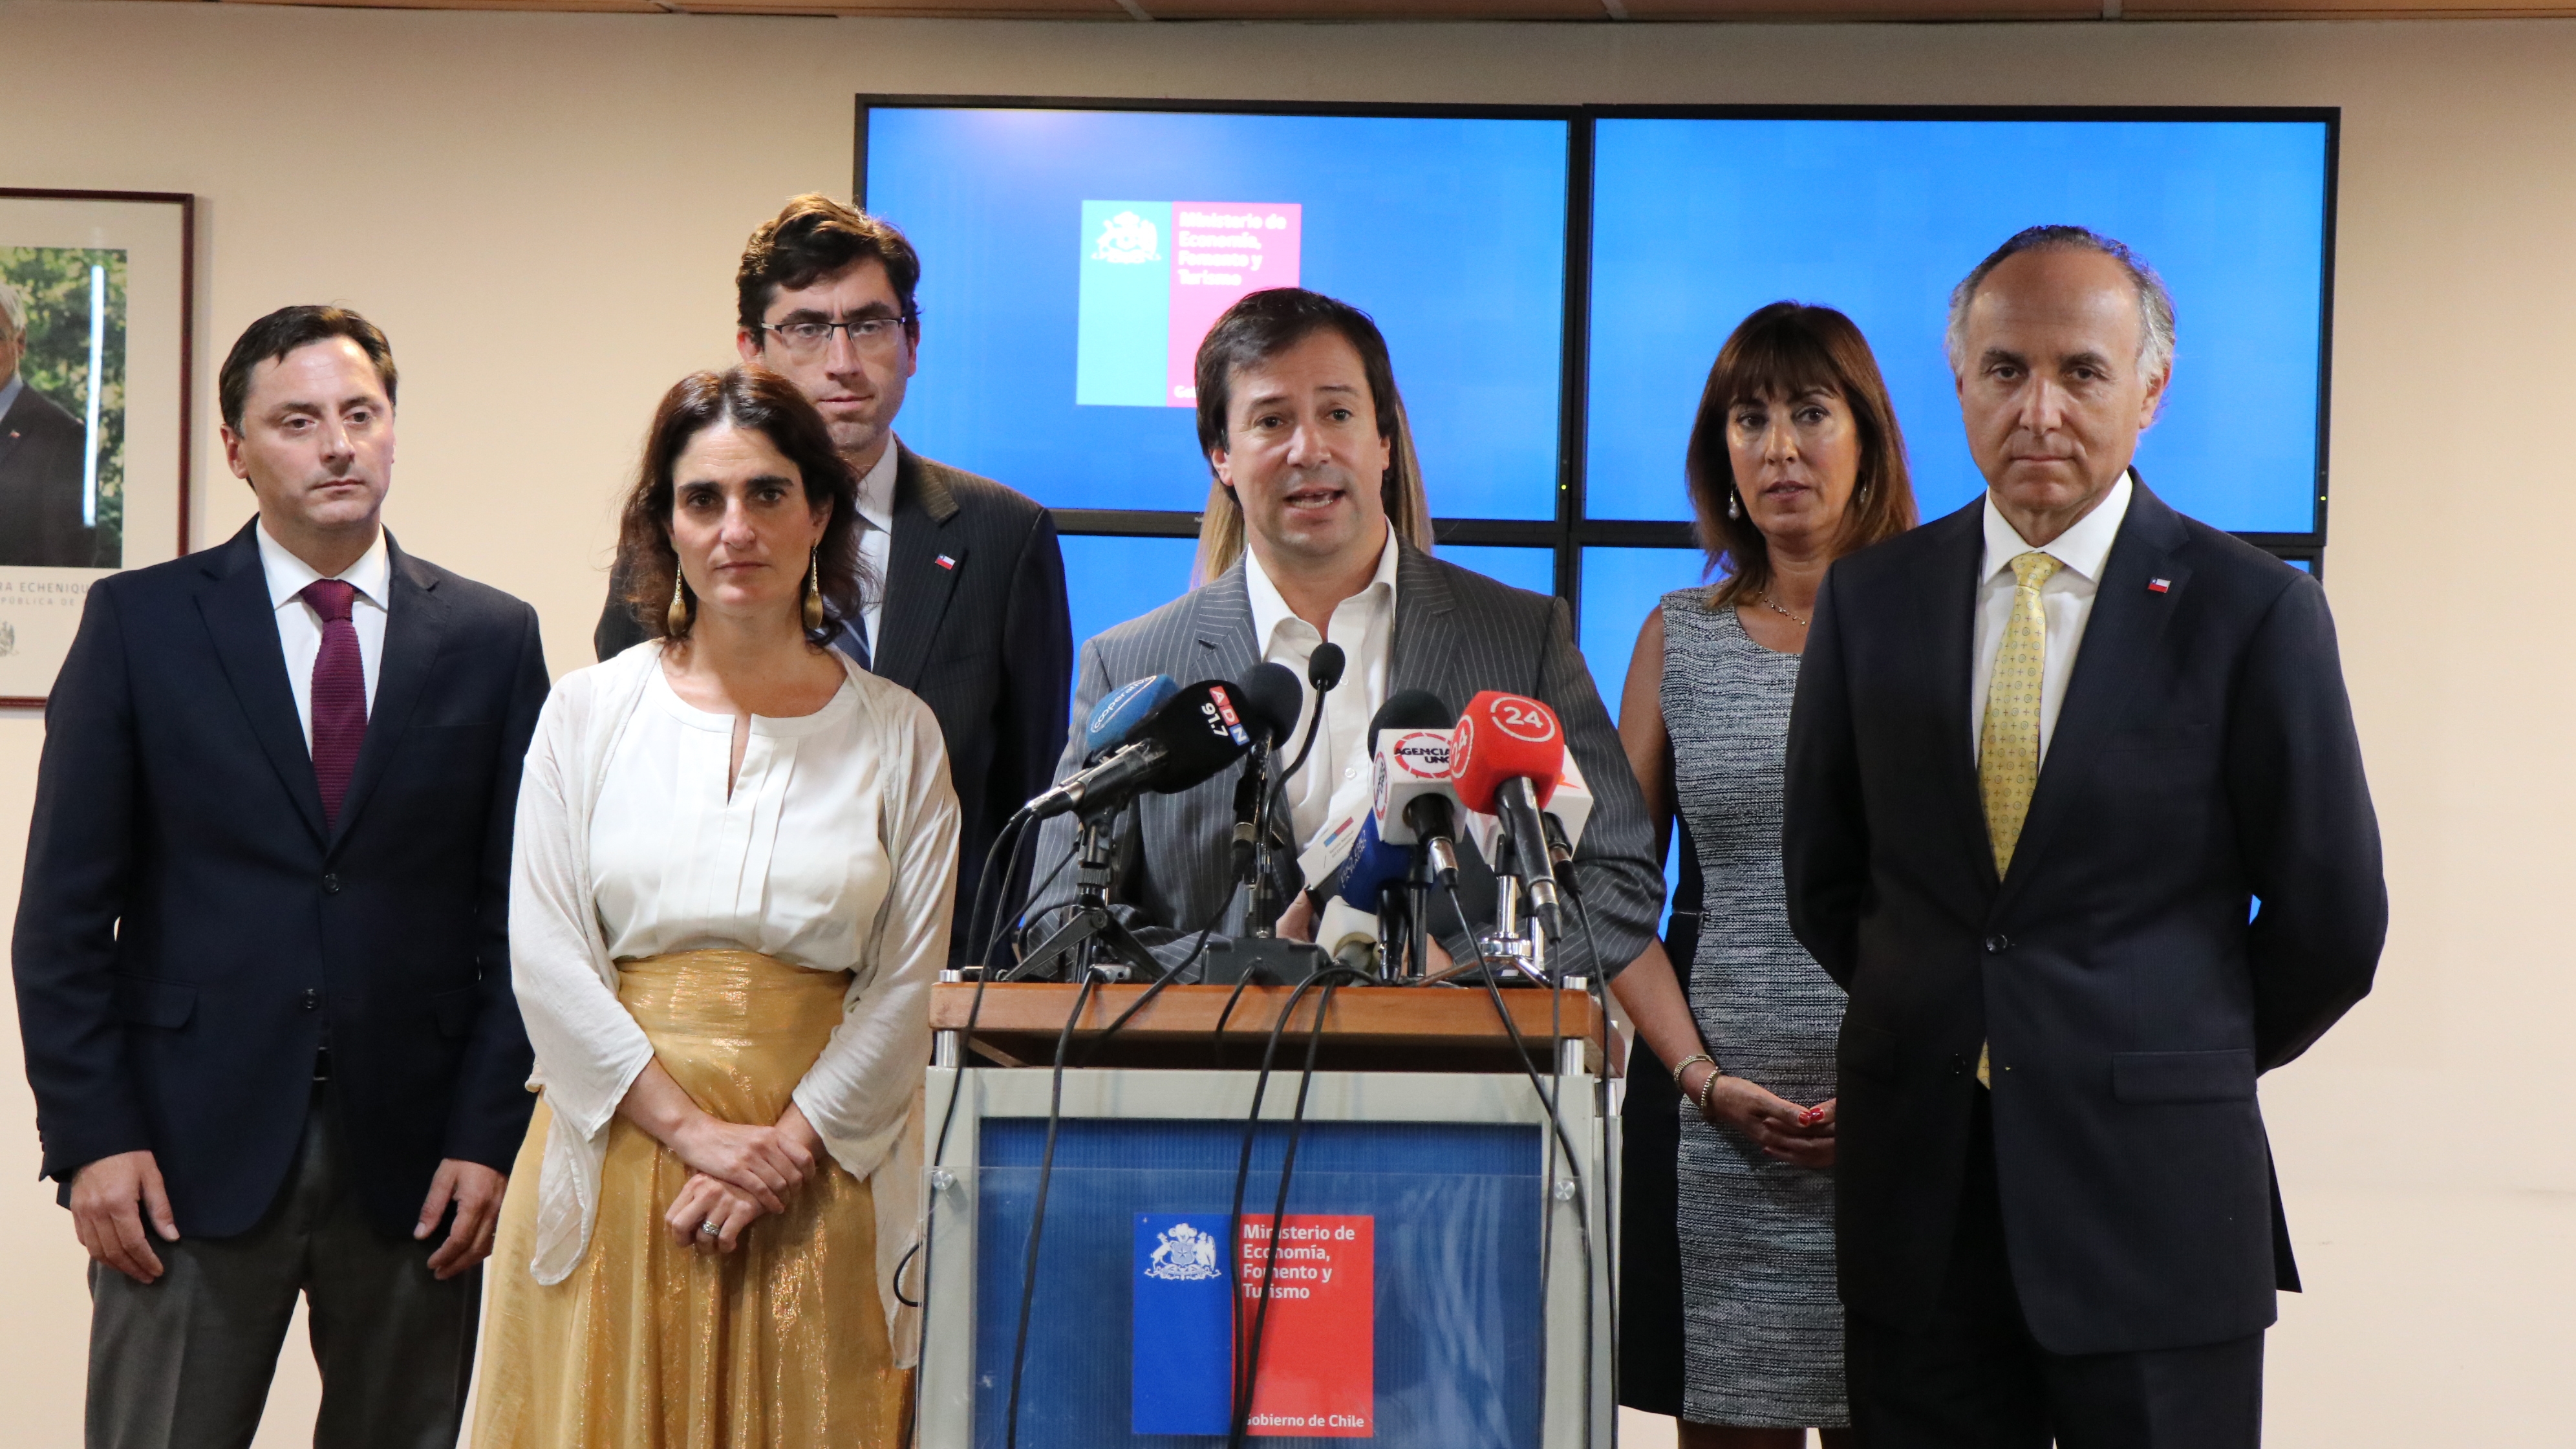 Ministros de Economía, RR.EE. y Trabajo  anuncian medidas multisectoriales para contener efectos del Covid-19 en Chile